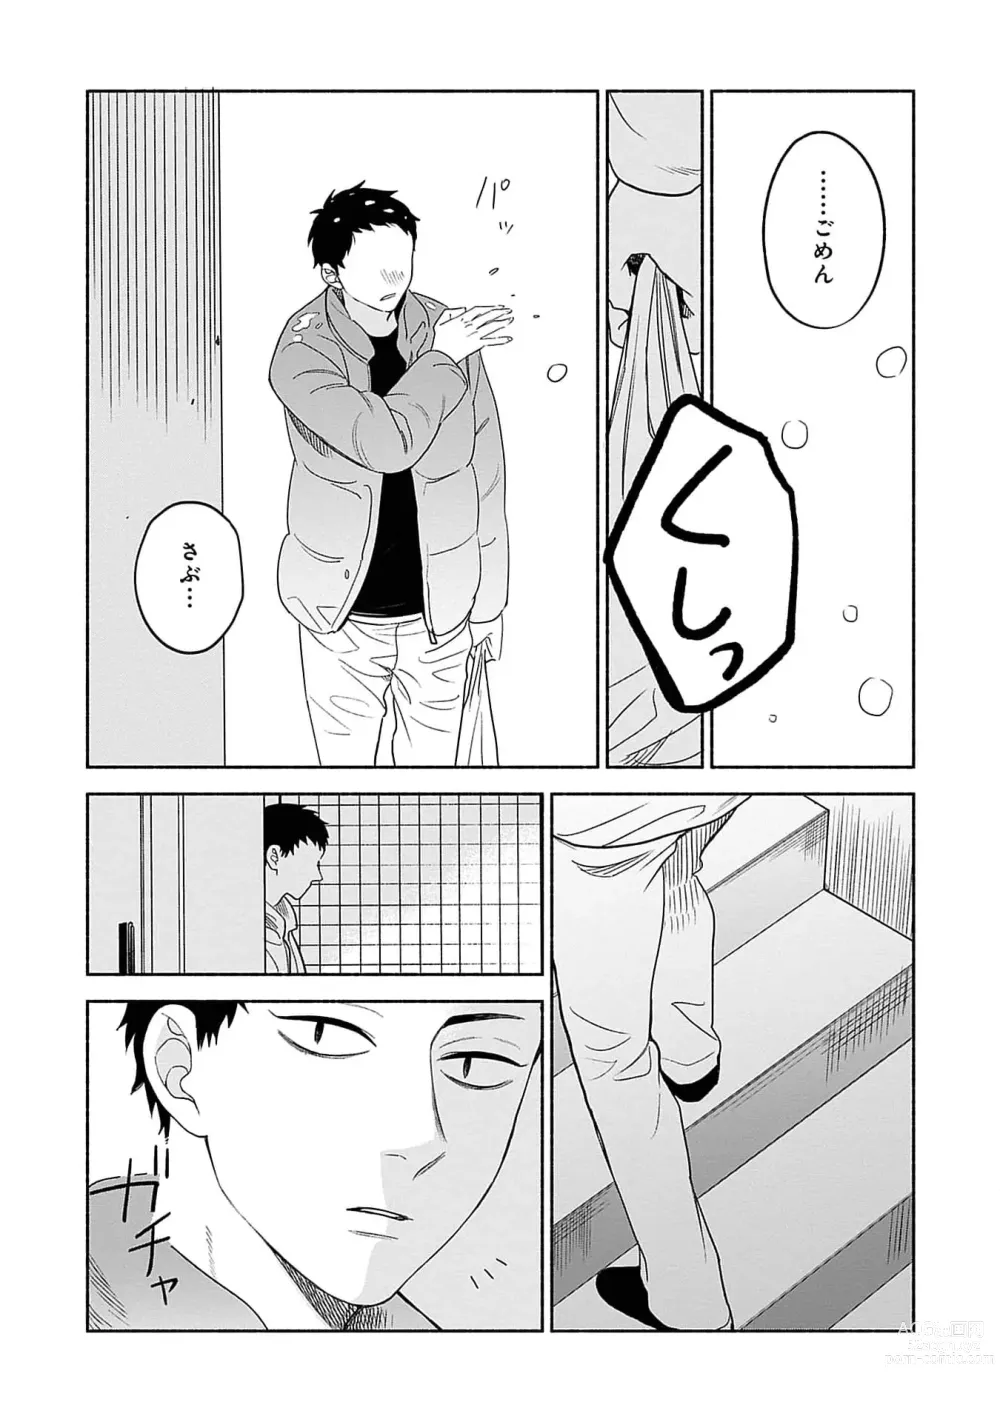 Page 169 of manga Yoru no Kyoudai